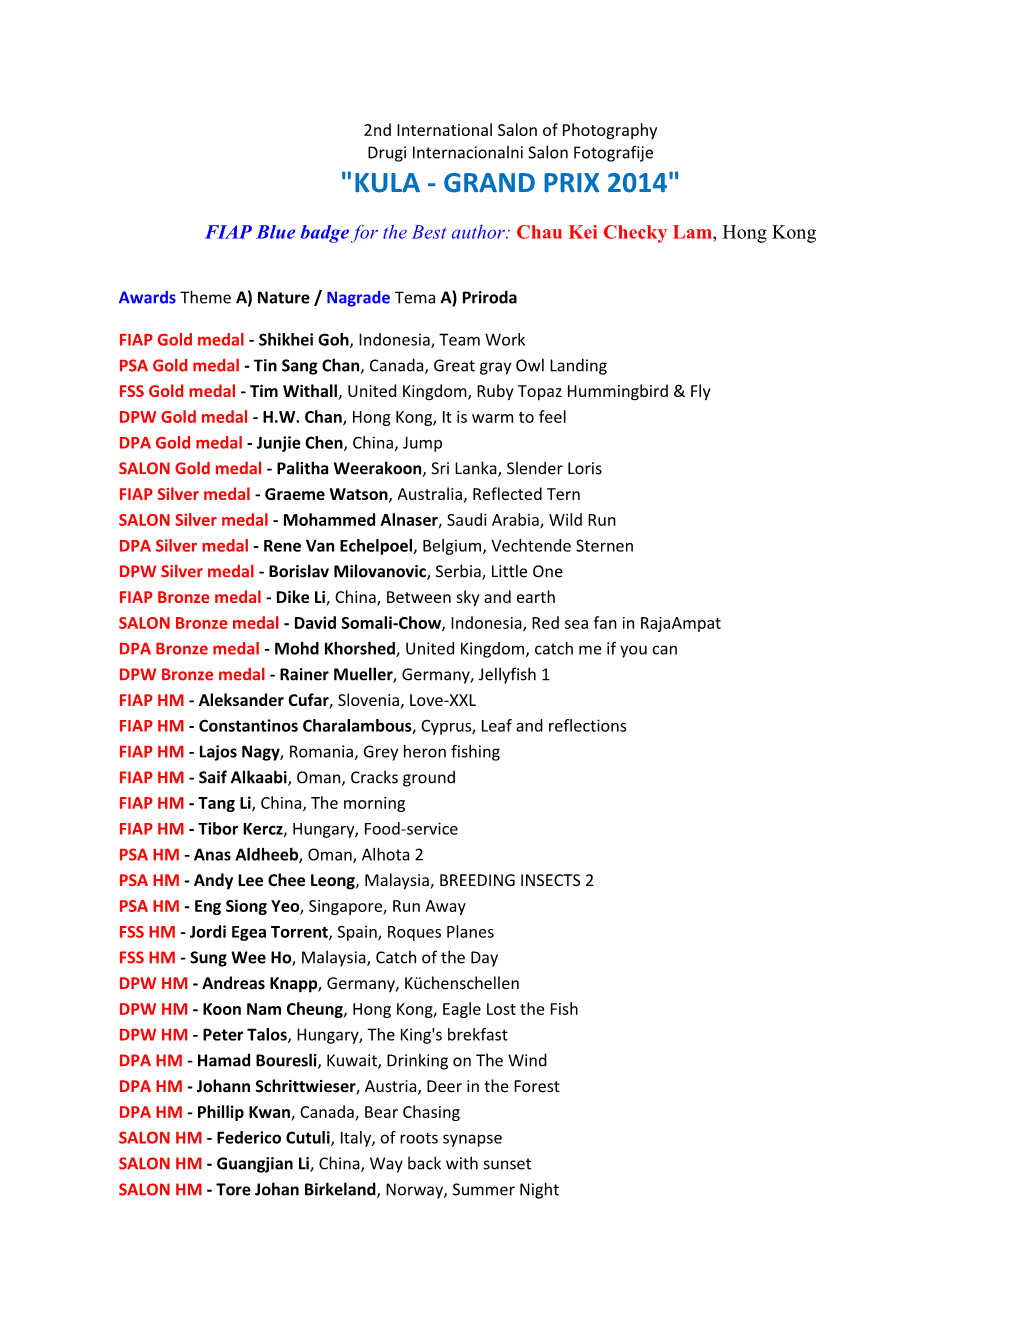 "Kula - Grand Prix 2014"